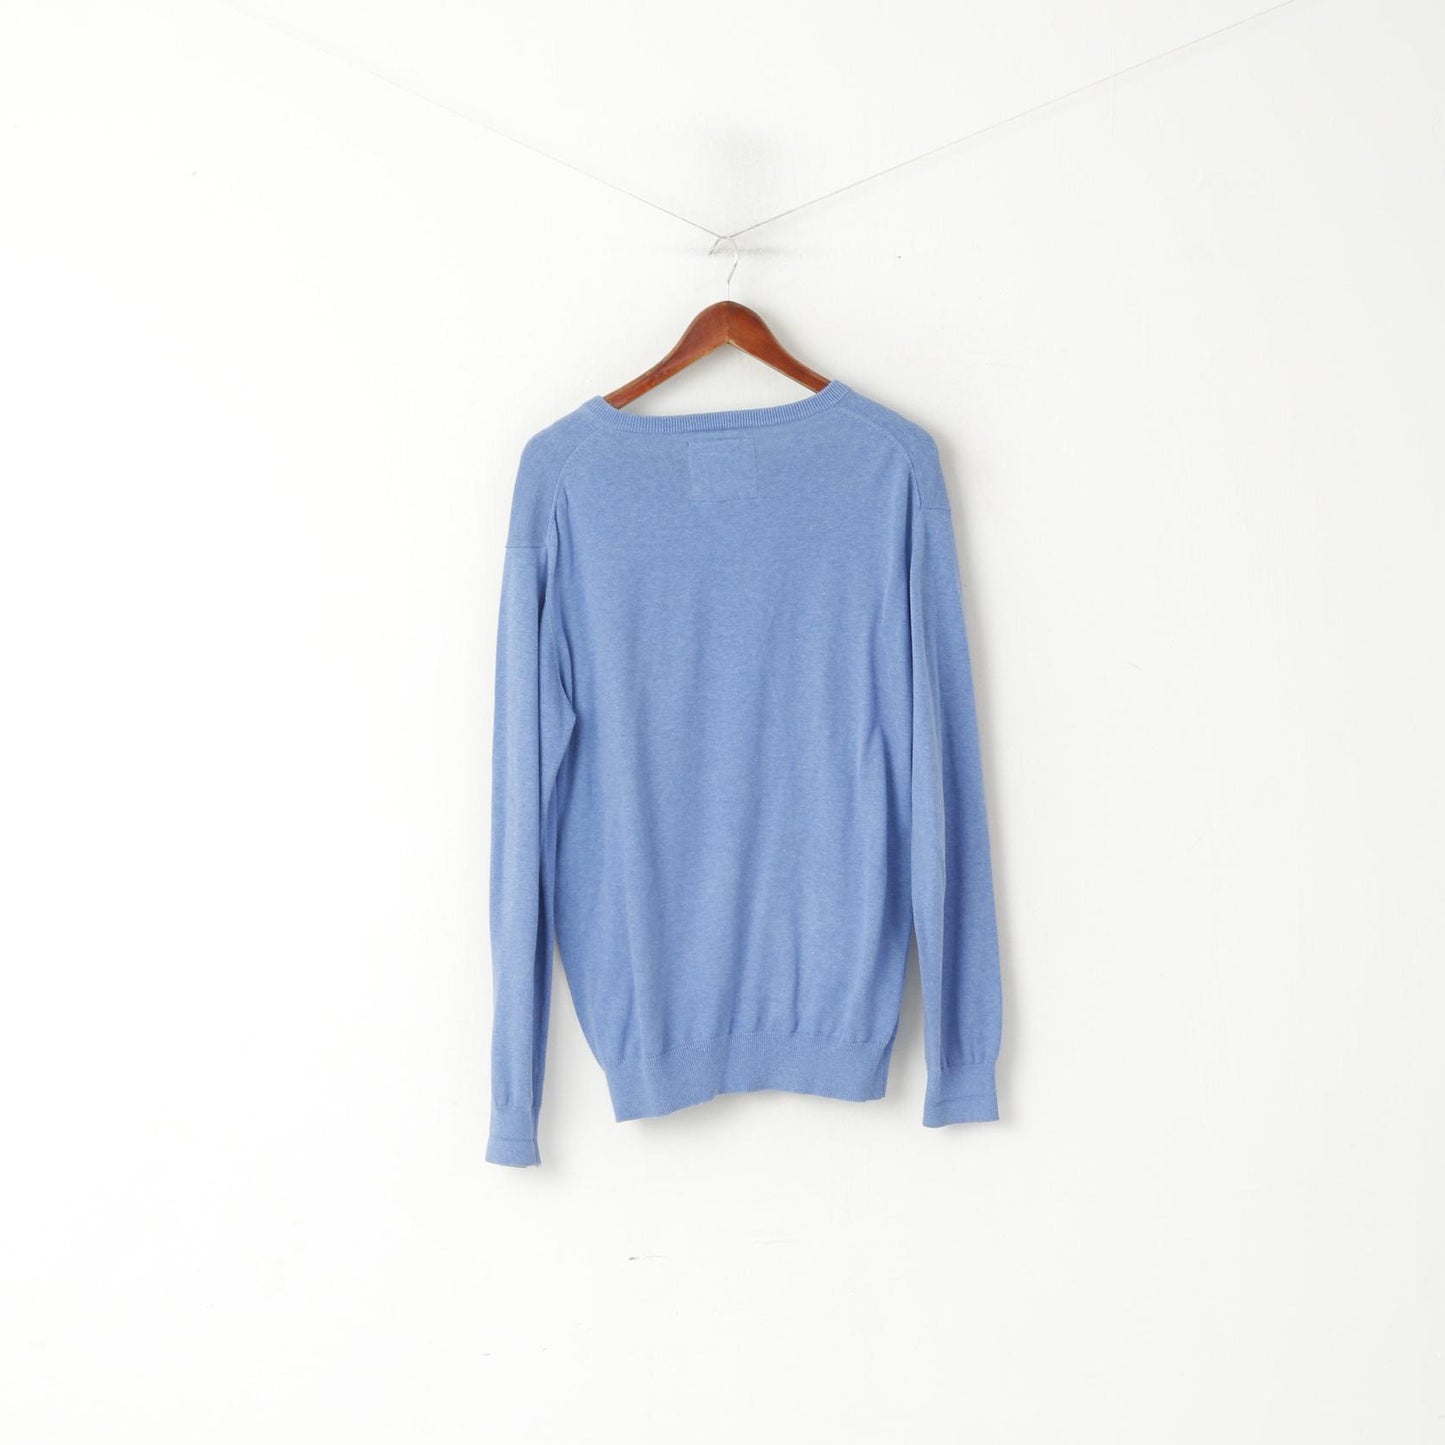 Morgan Men M Jumper Blue Cotton Comfort V Neck Classic Sweater